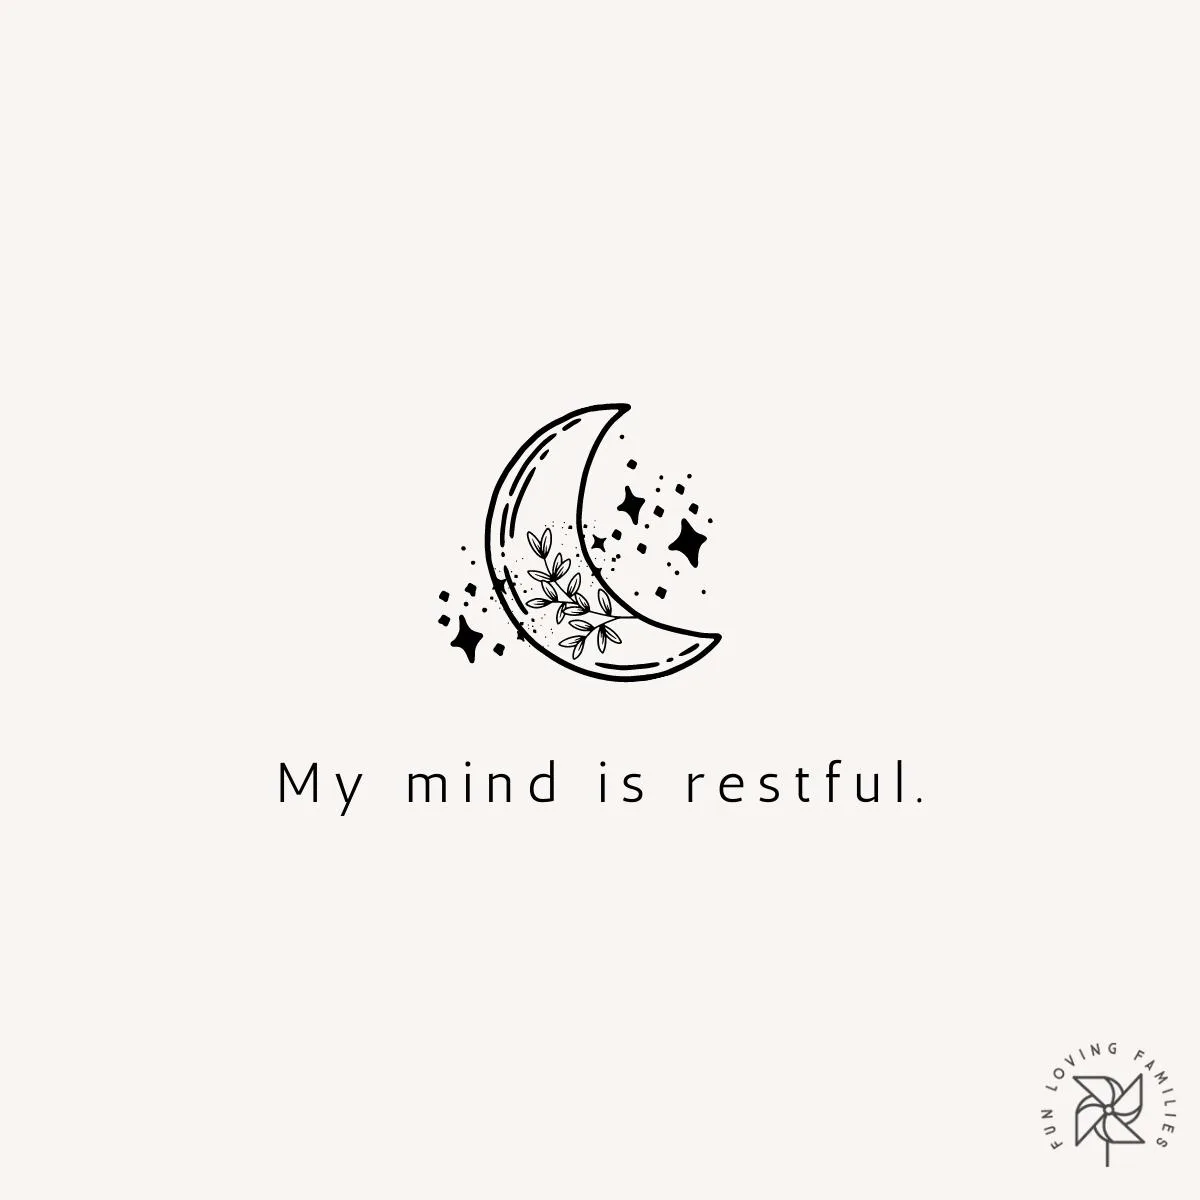 My mind is restful affirmation